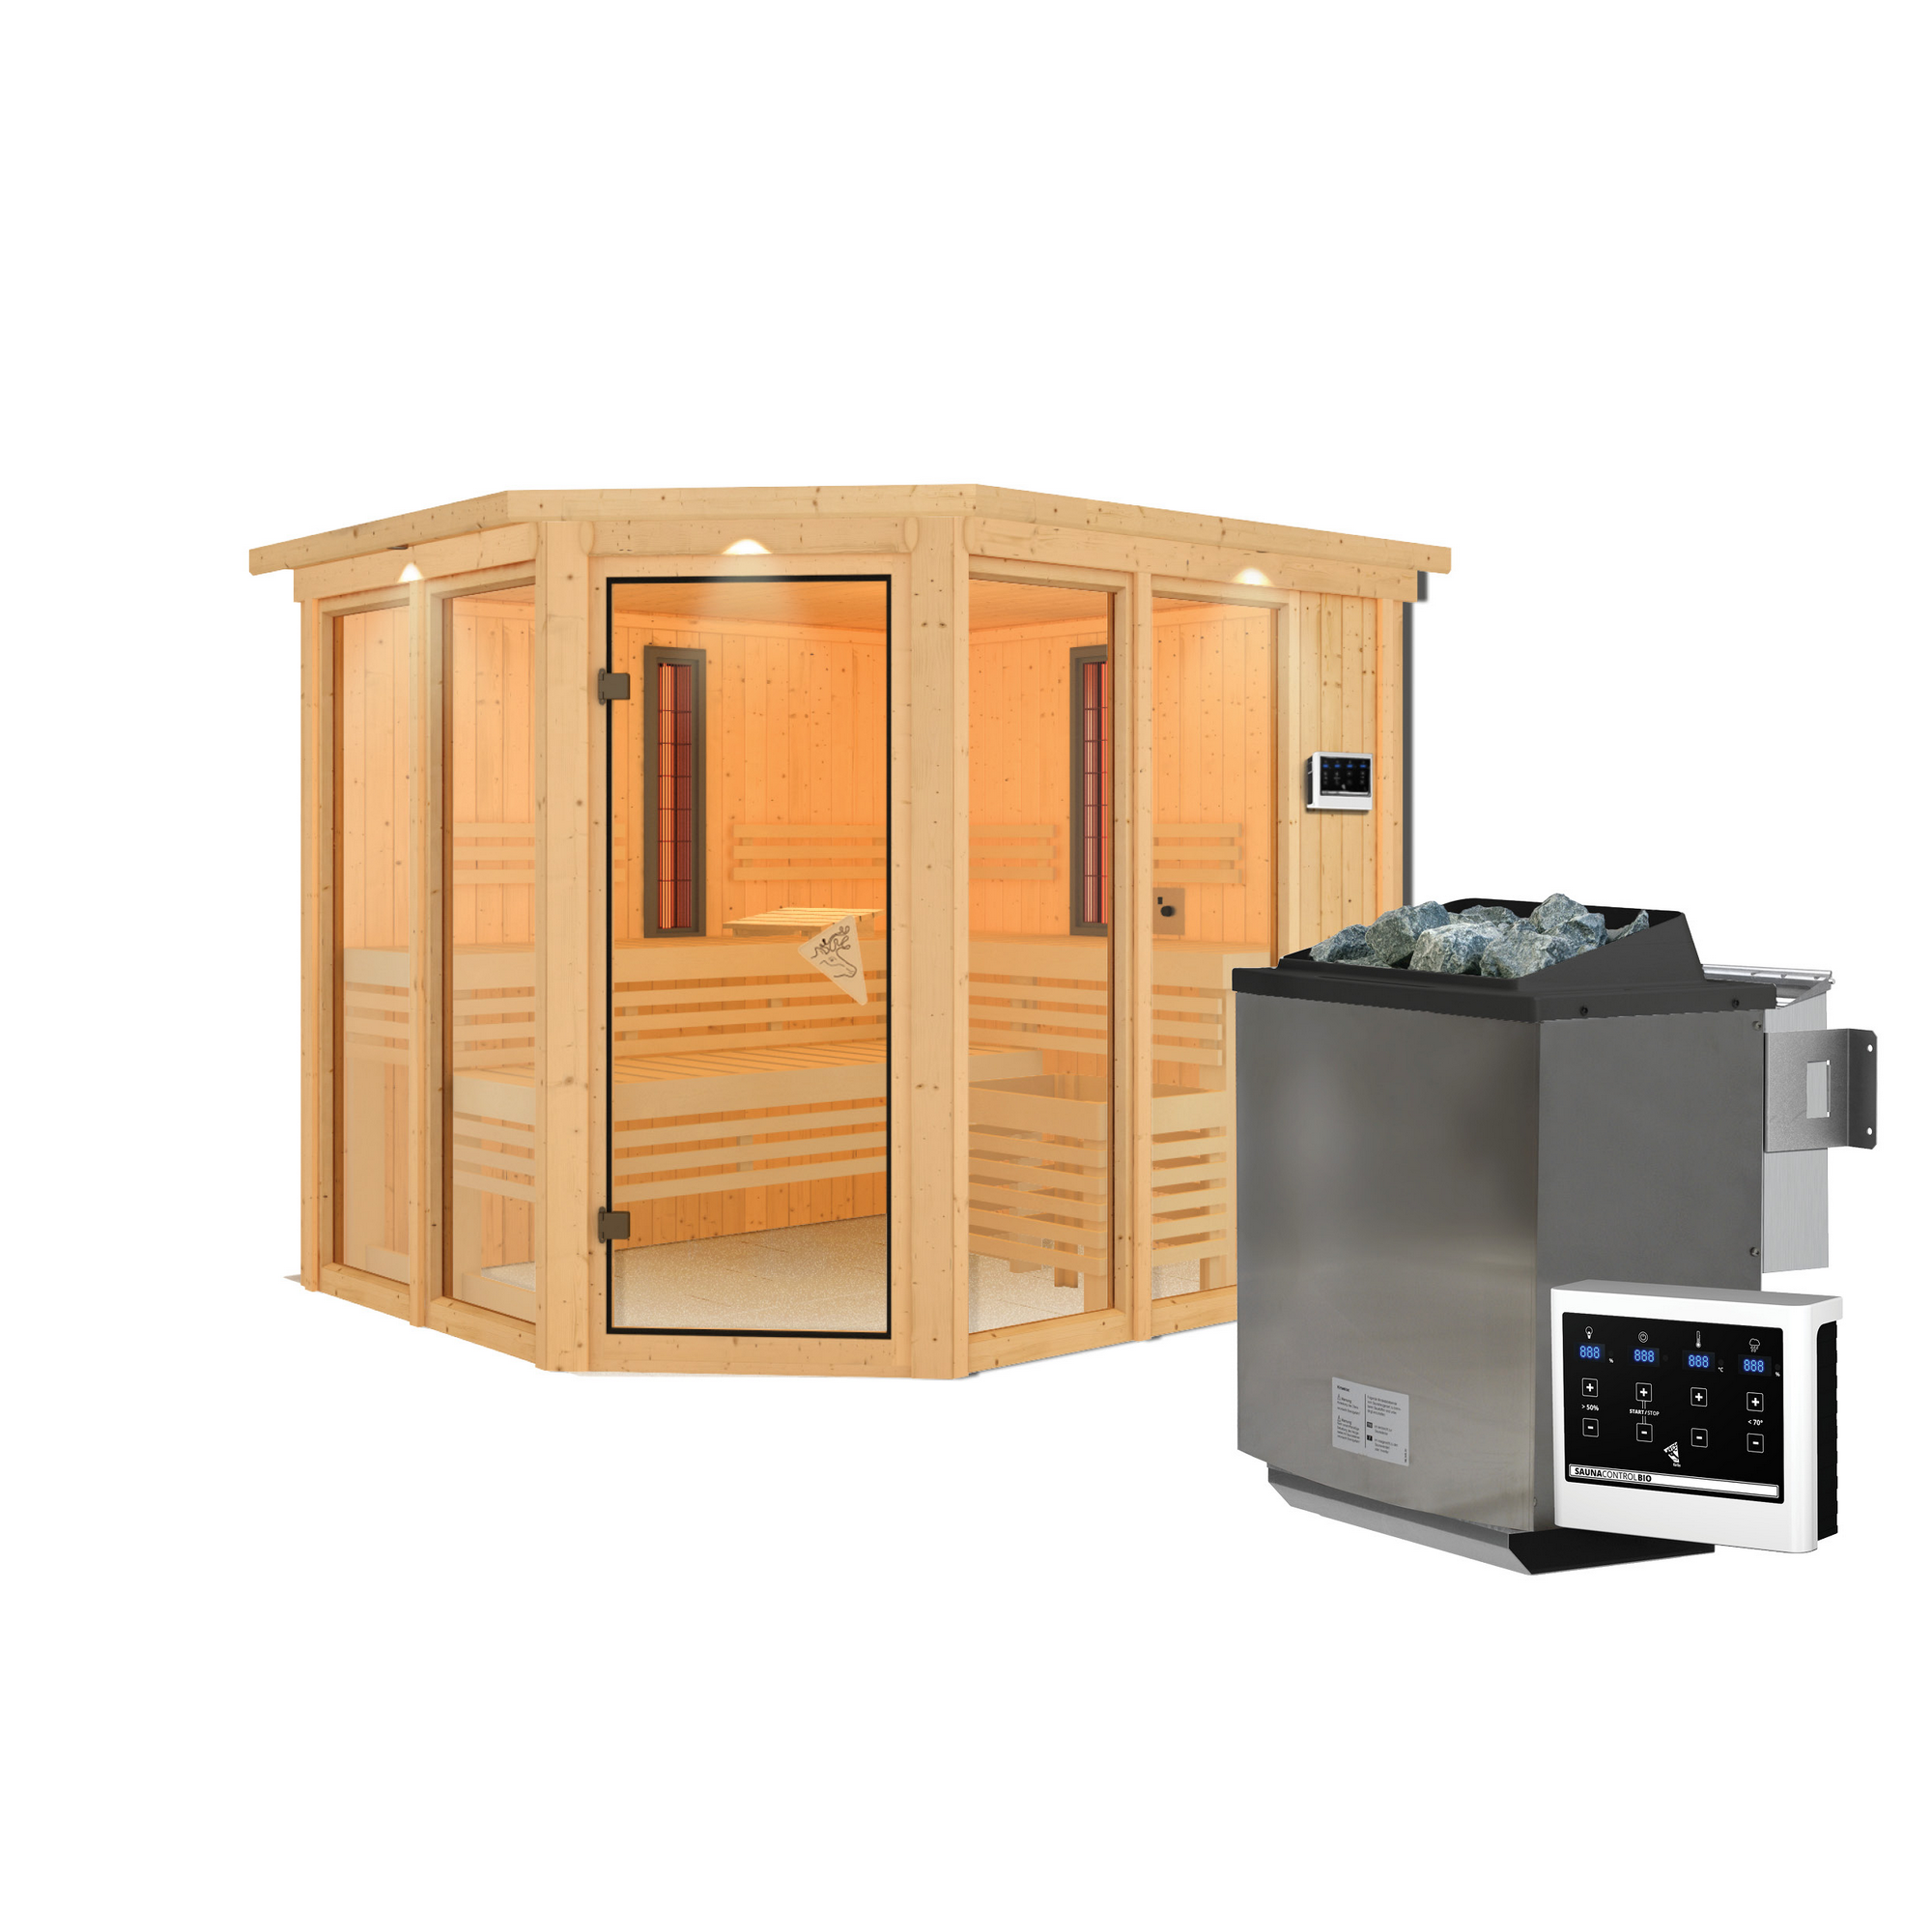 Infrarotkabine 'Alejandra' naturbelassen mit Kranz und bronzierter Tür 9 kW Bio-Ofen externe Steuerung 245 x 210 x 202 cm + product picture